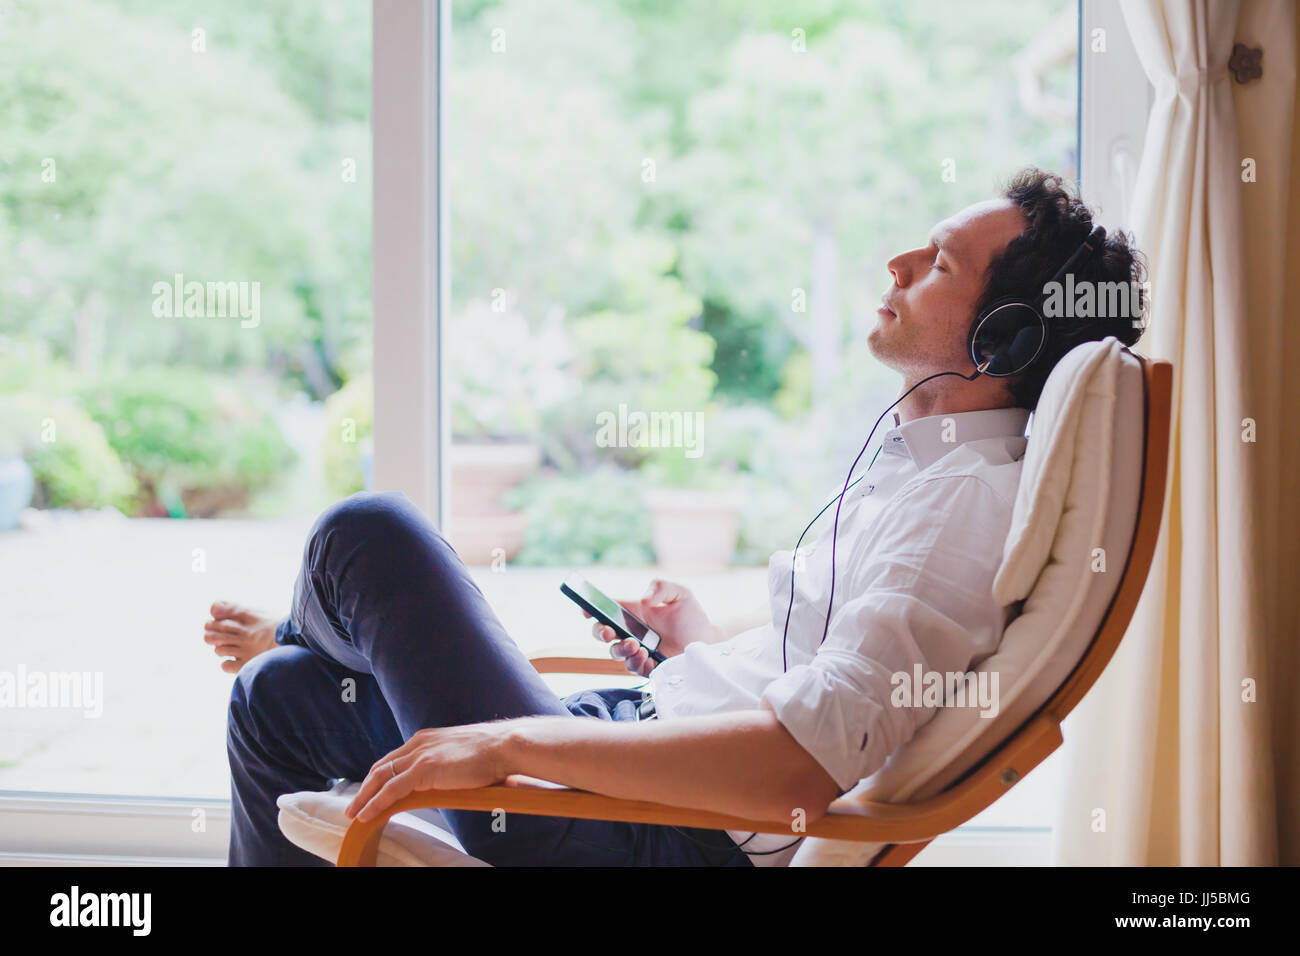 Ascolto di musica rilassante a casa, rilassato uomo nelle cuffie seduto nella sedia a sdraio nei moderni interni luminosi Foto Stock